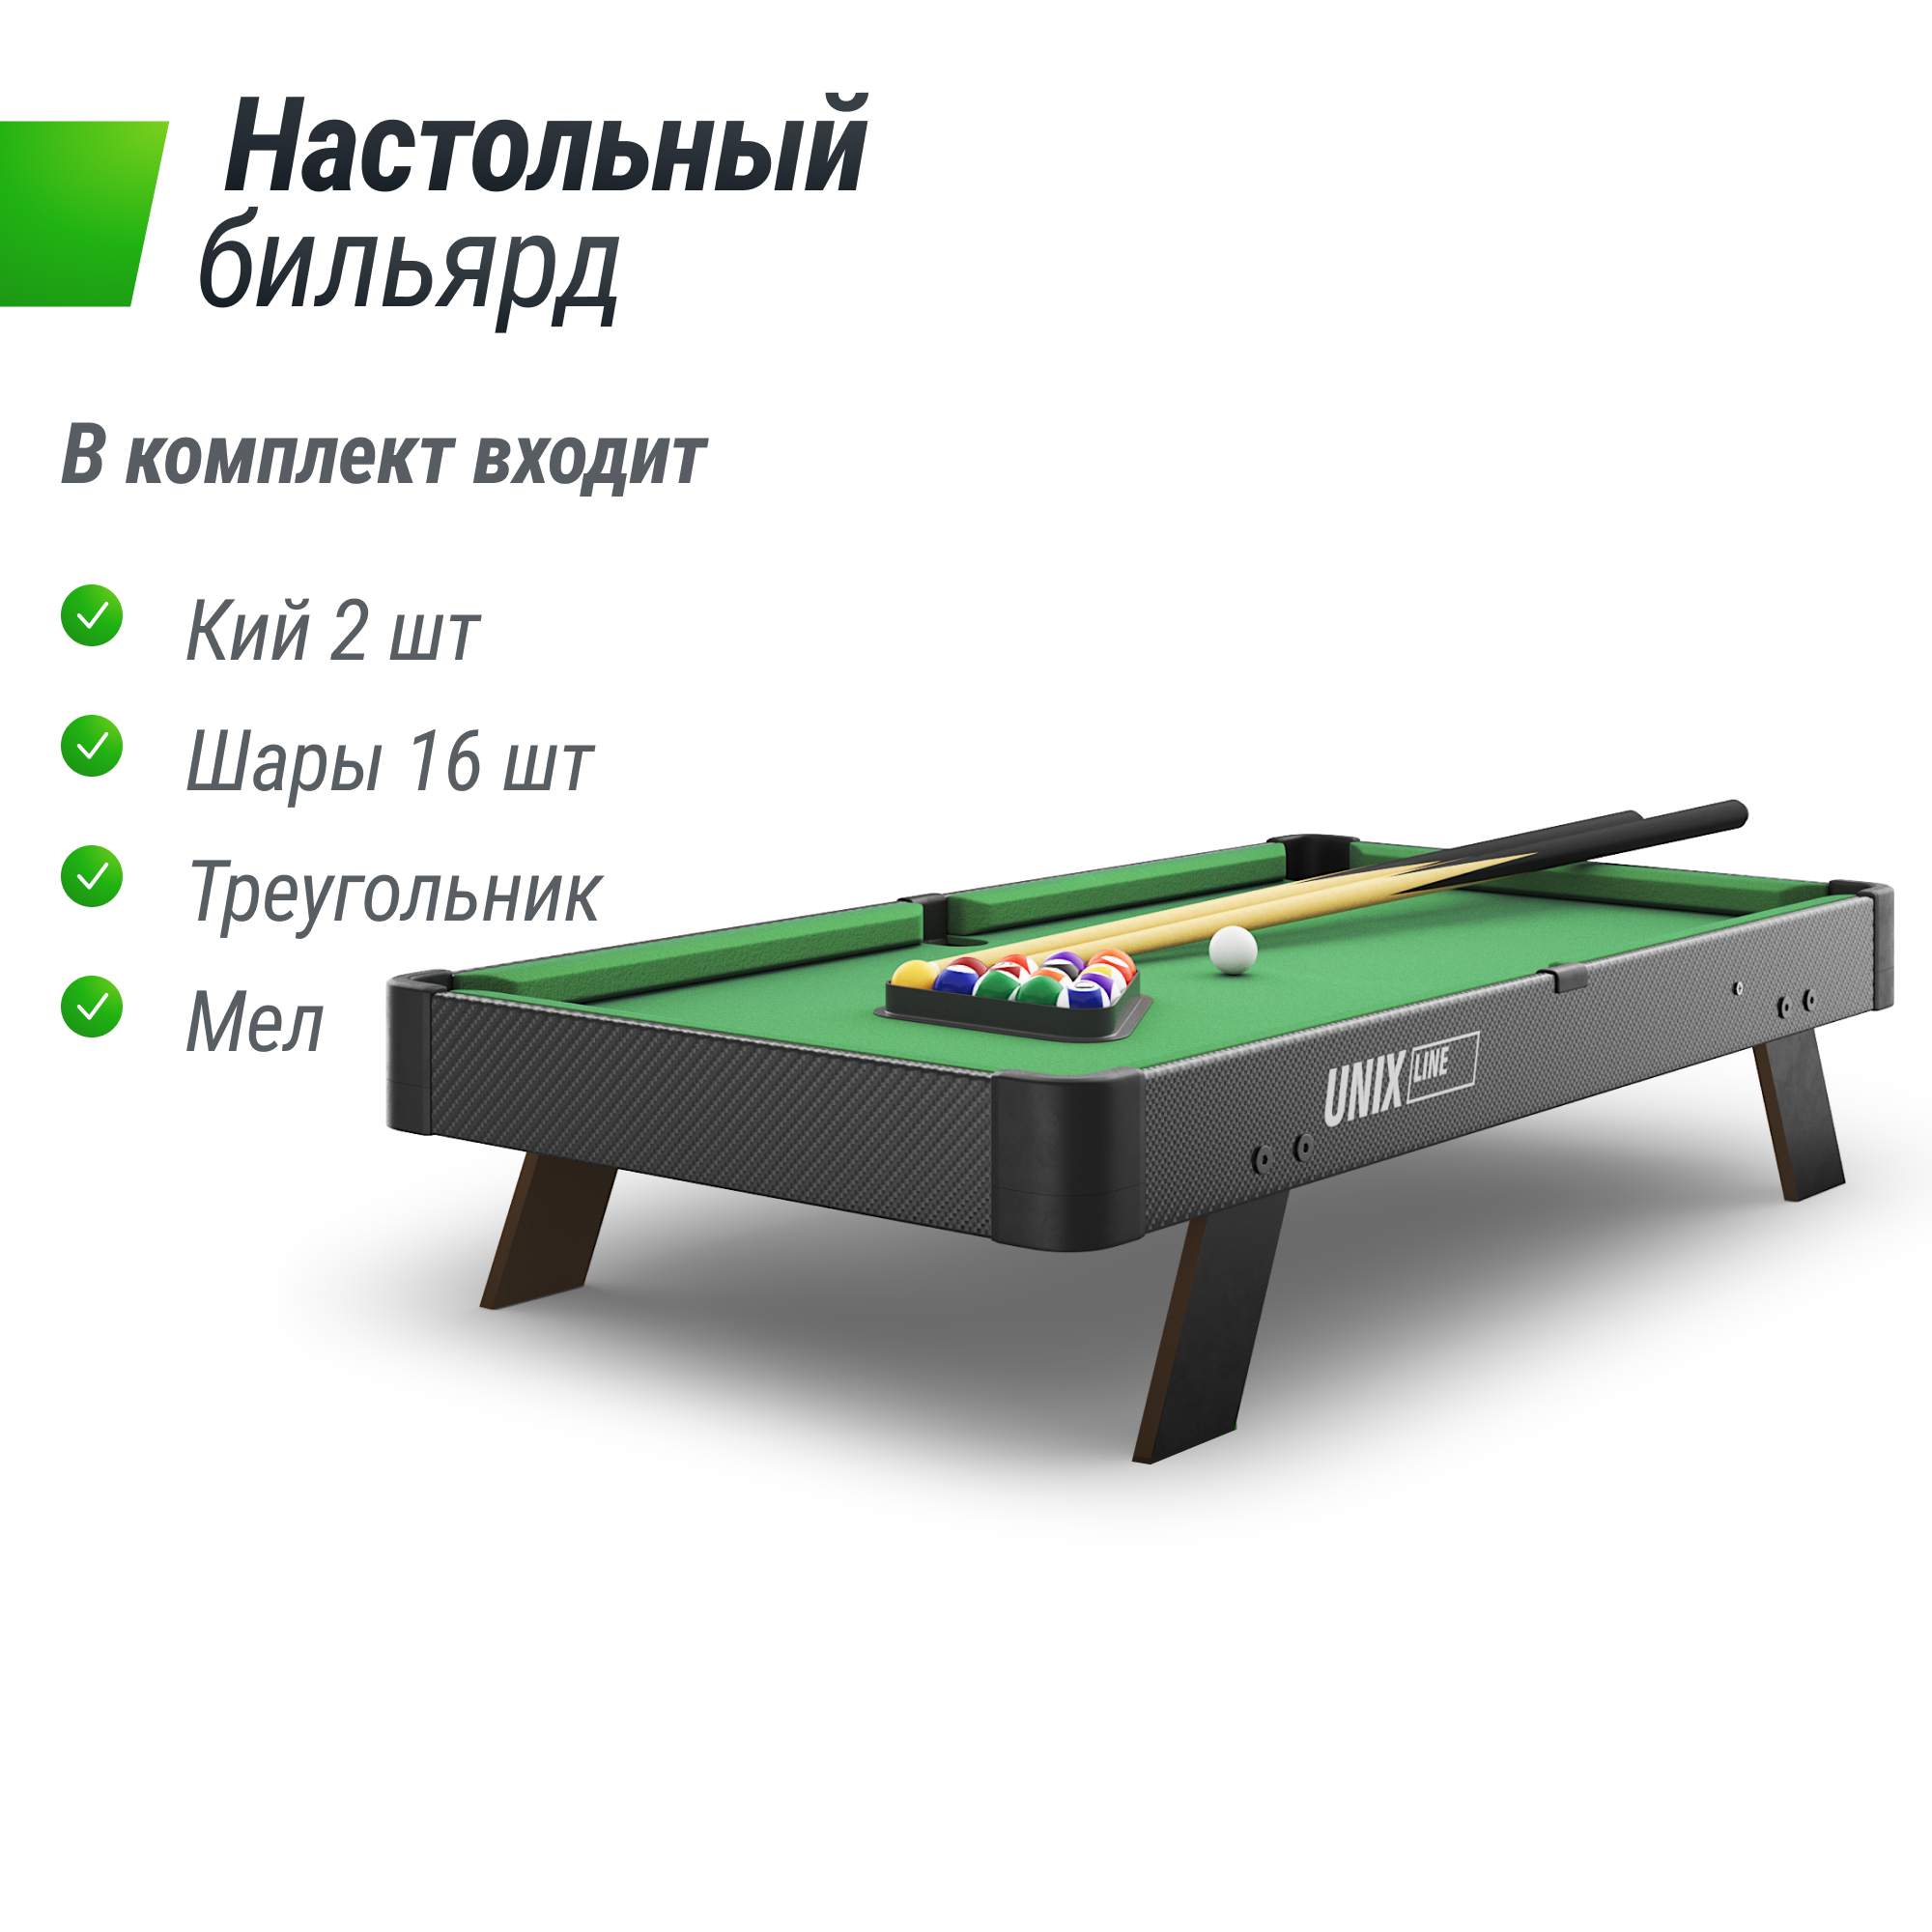 Бильярдные столы — купить в Москве, цена от производителя